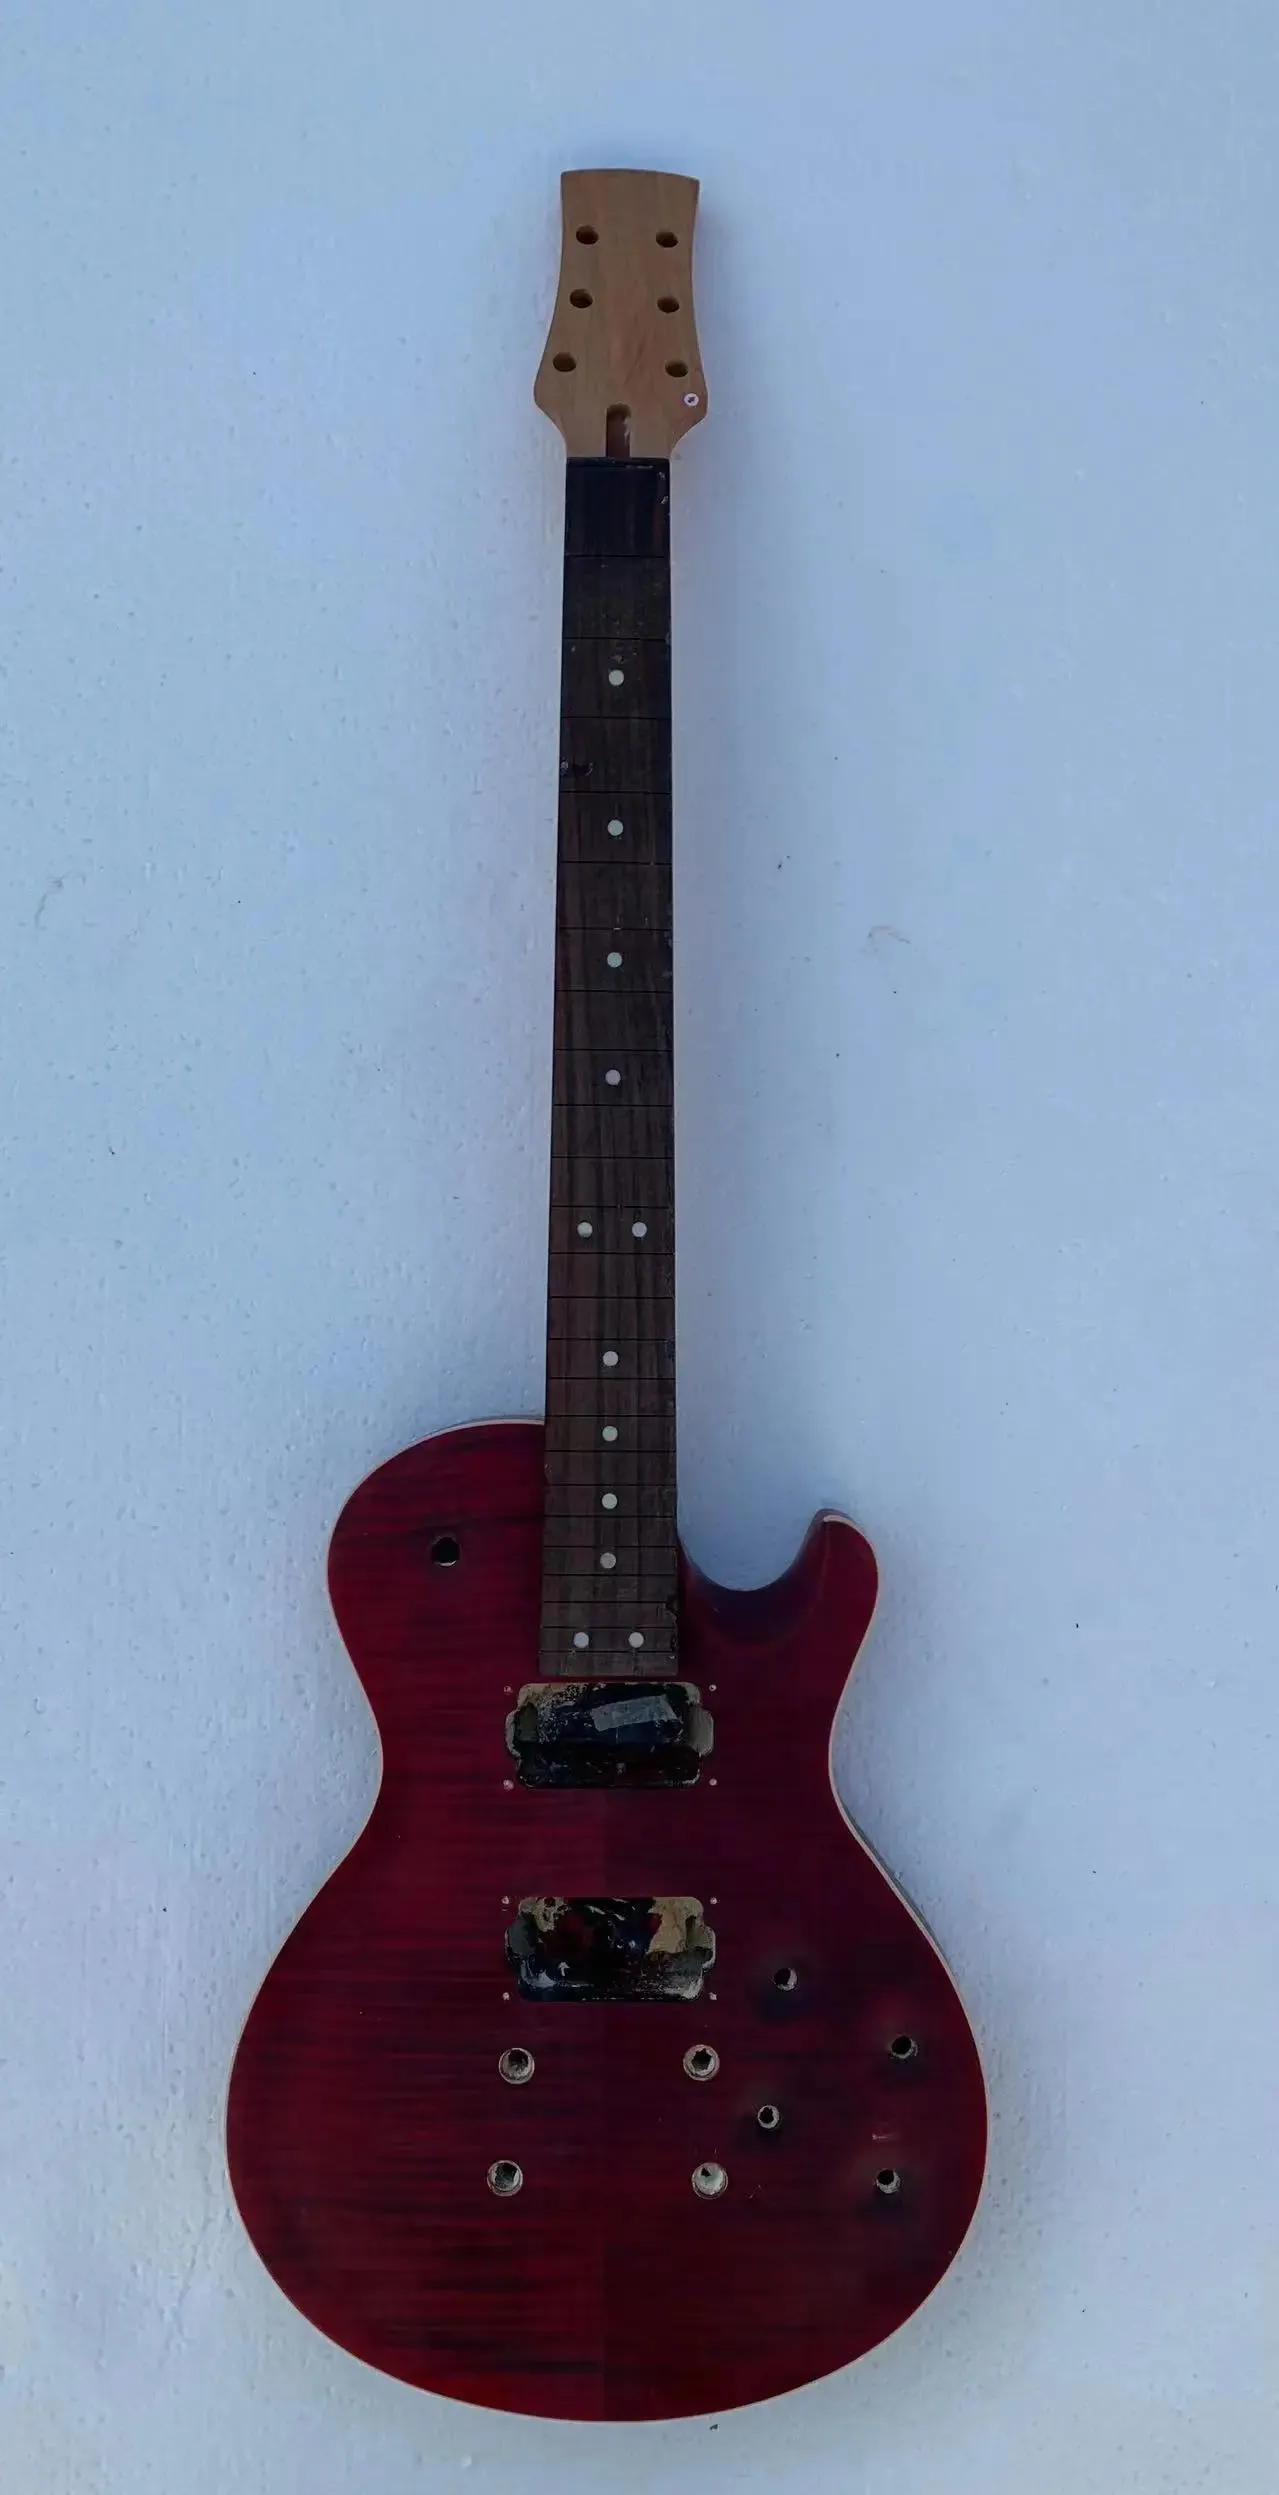 Charme bricolage personnalisé 6 cordes Chavl guitare électrique (pas neuf) Guitarra tigre érable haut sans matériel en Stock remise livraison gratuite